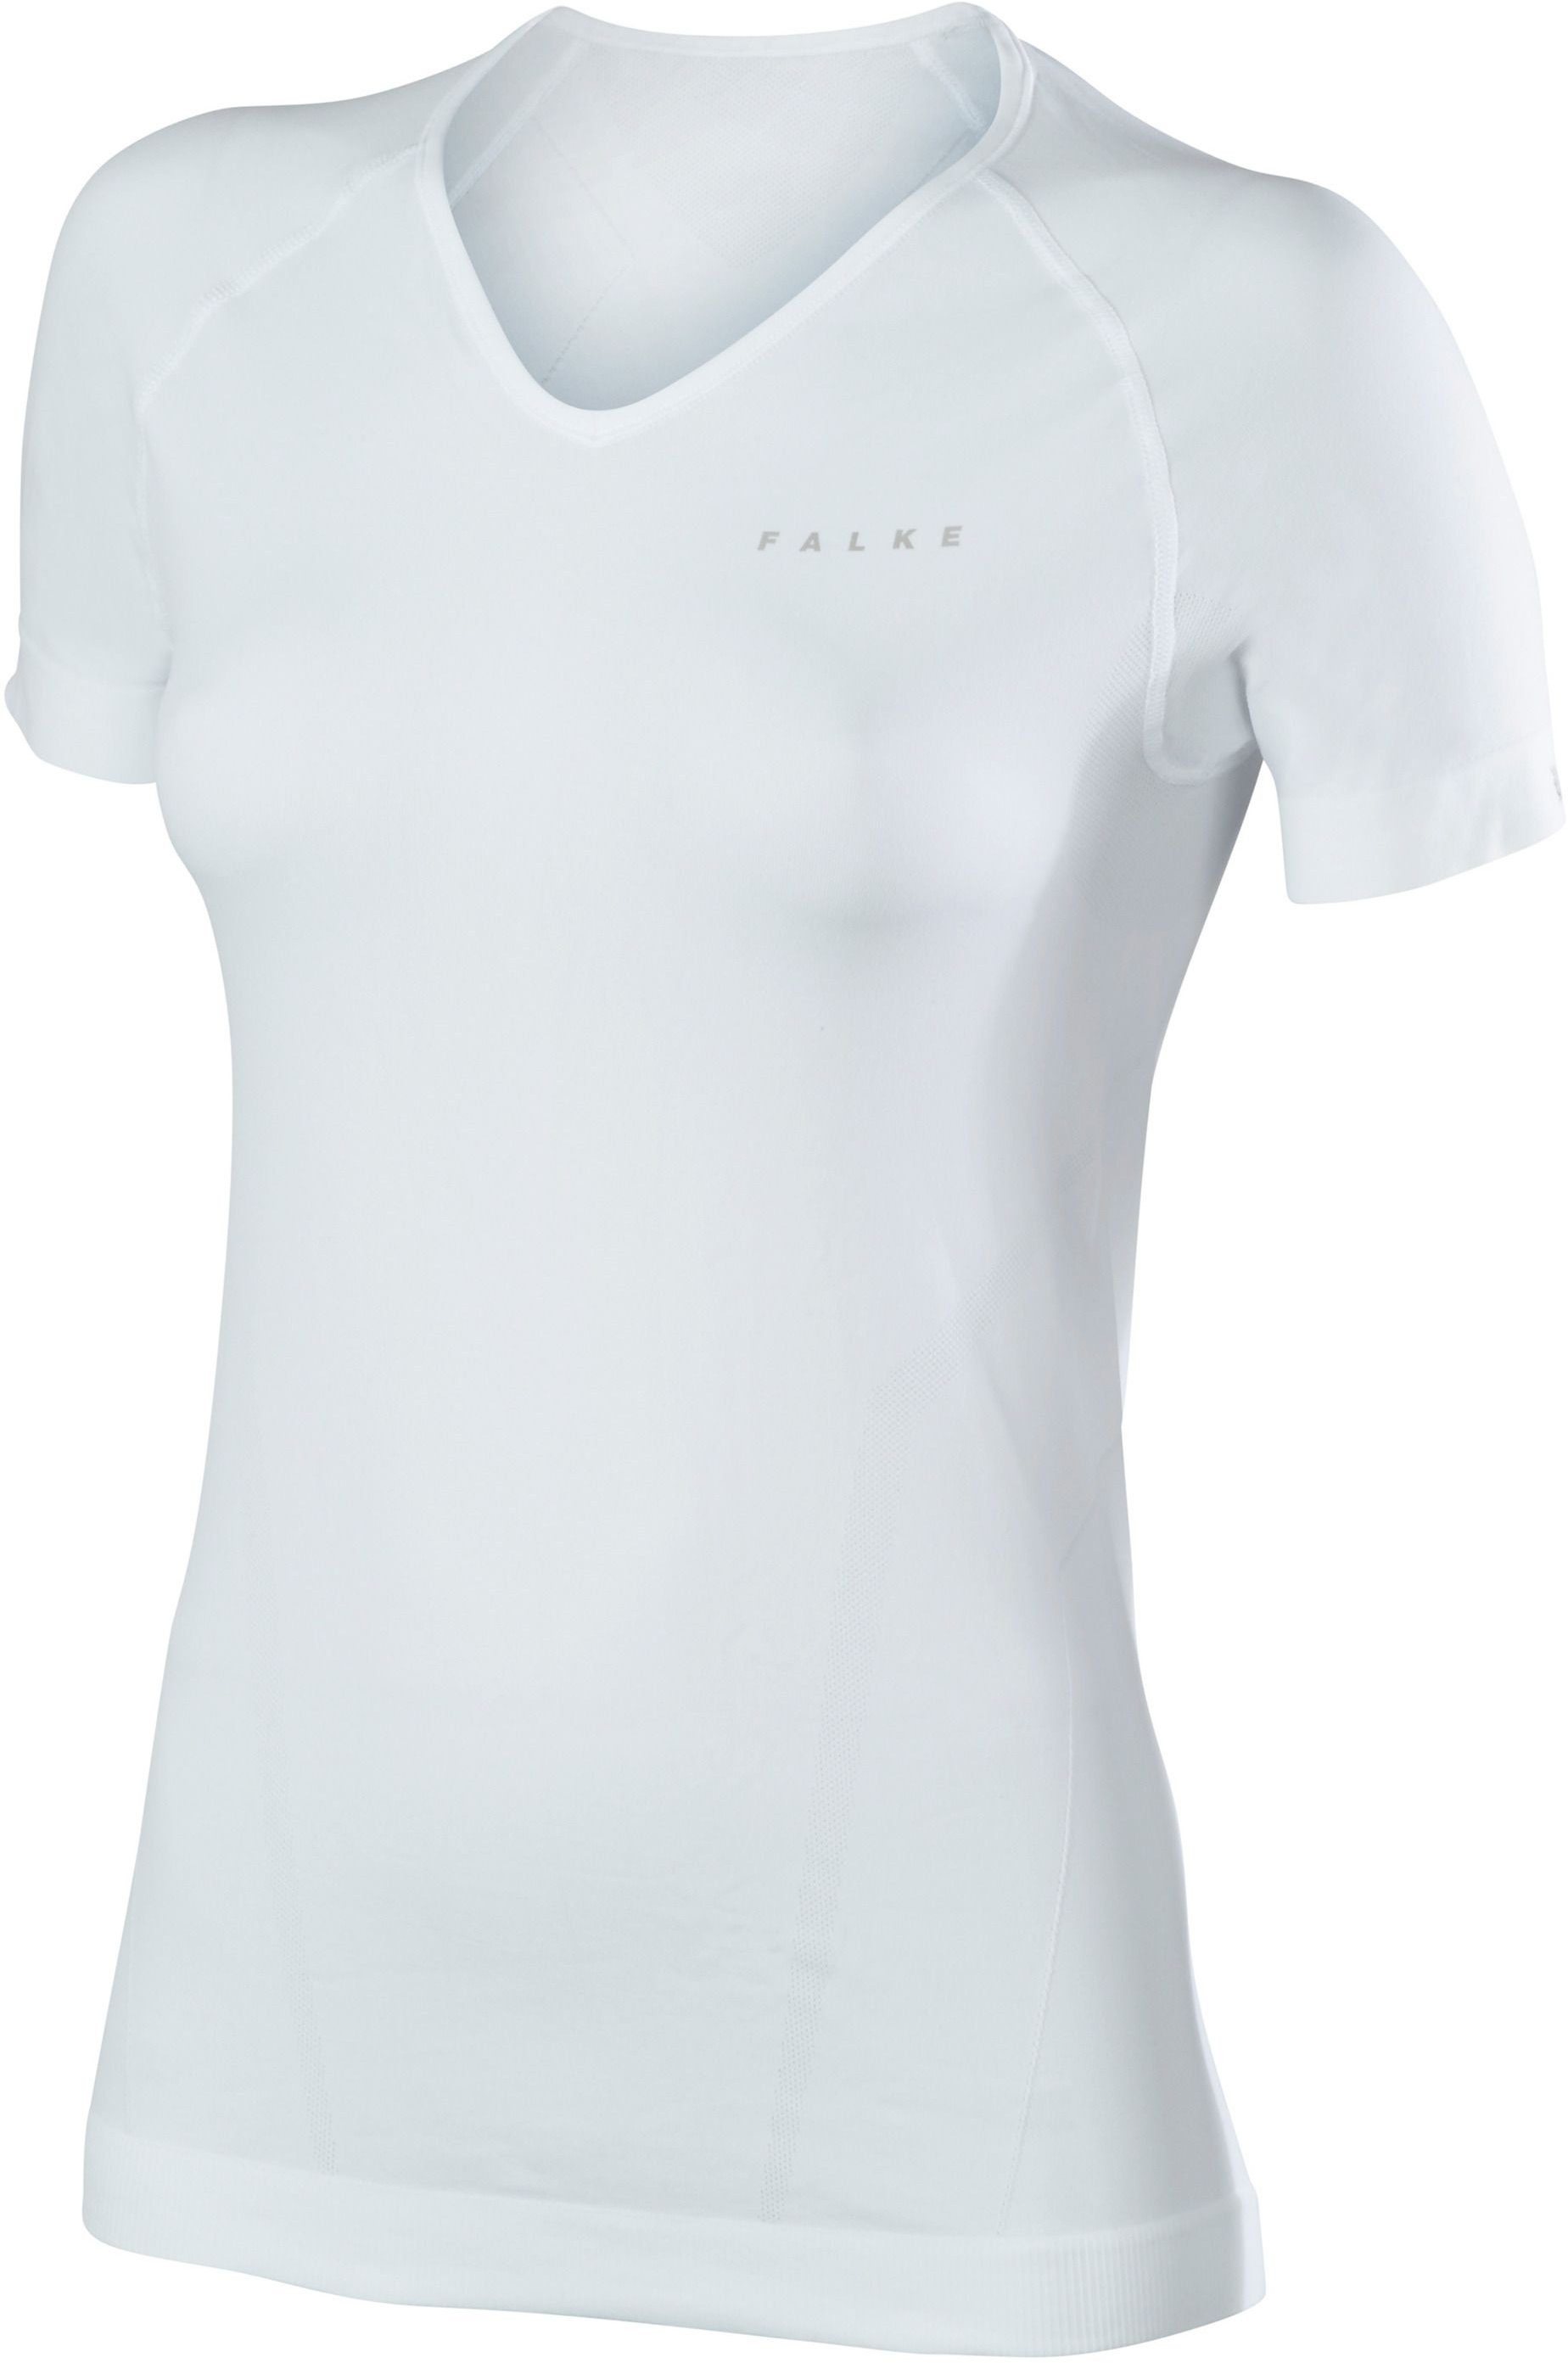 FALKE Funktionsunterhemd Shortsleeved Shirt Comfort Women white